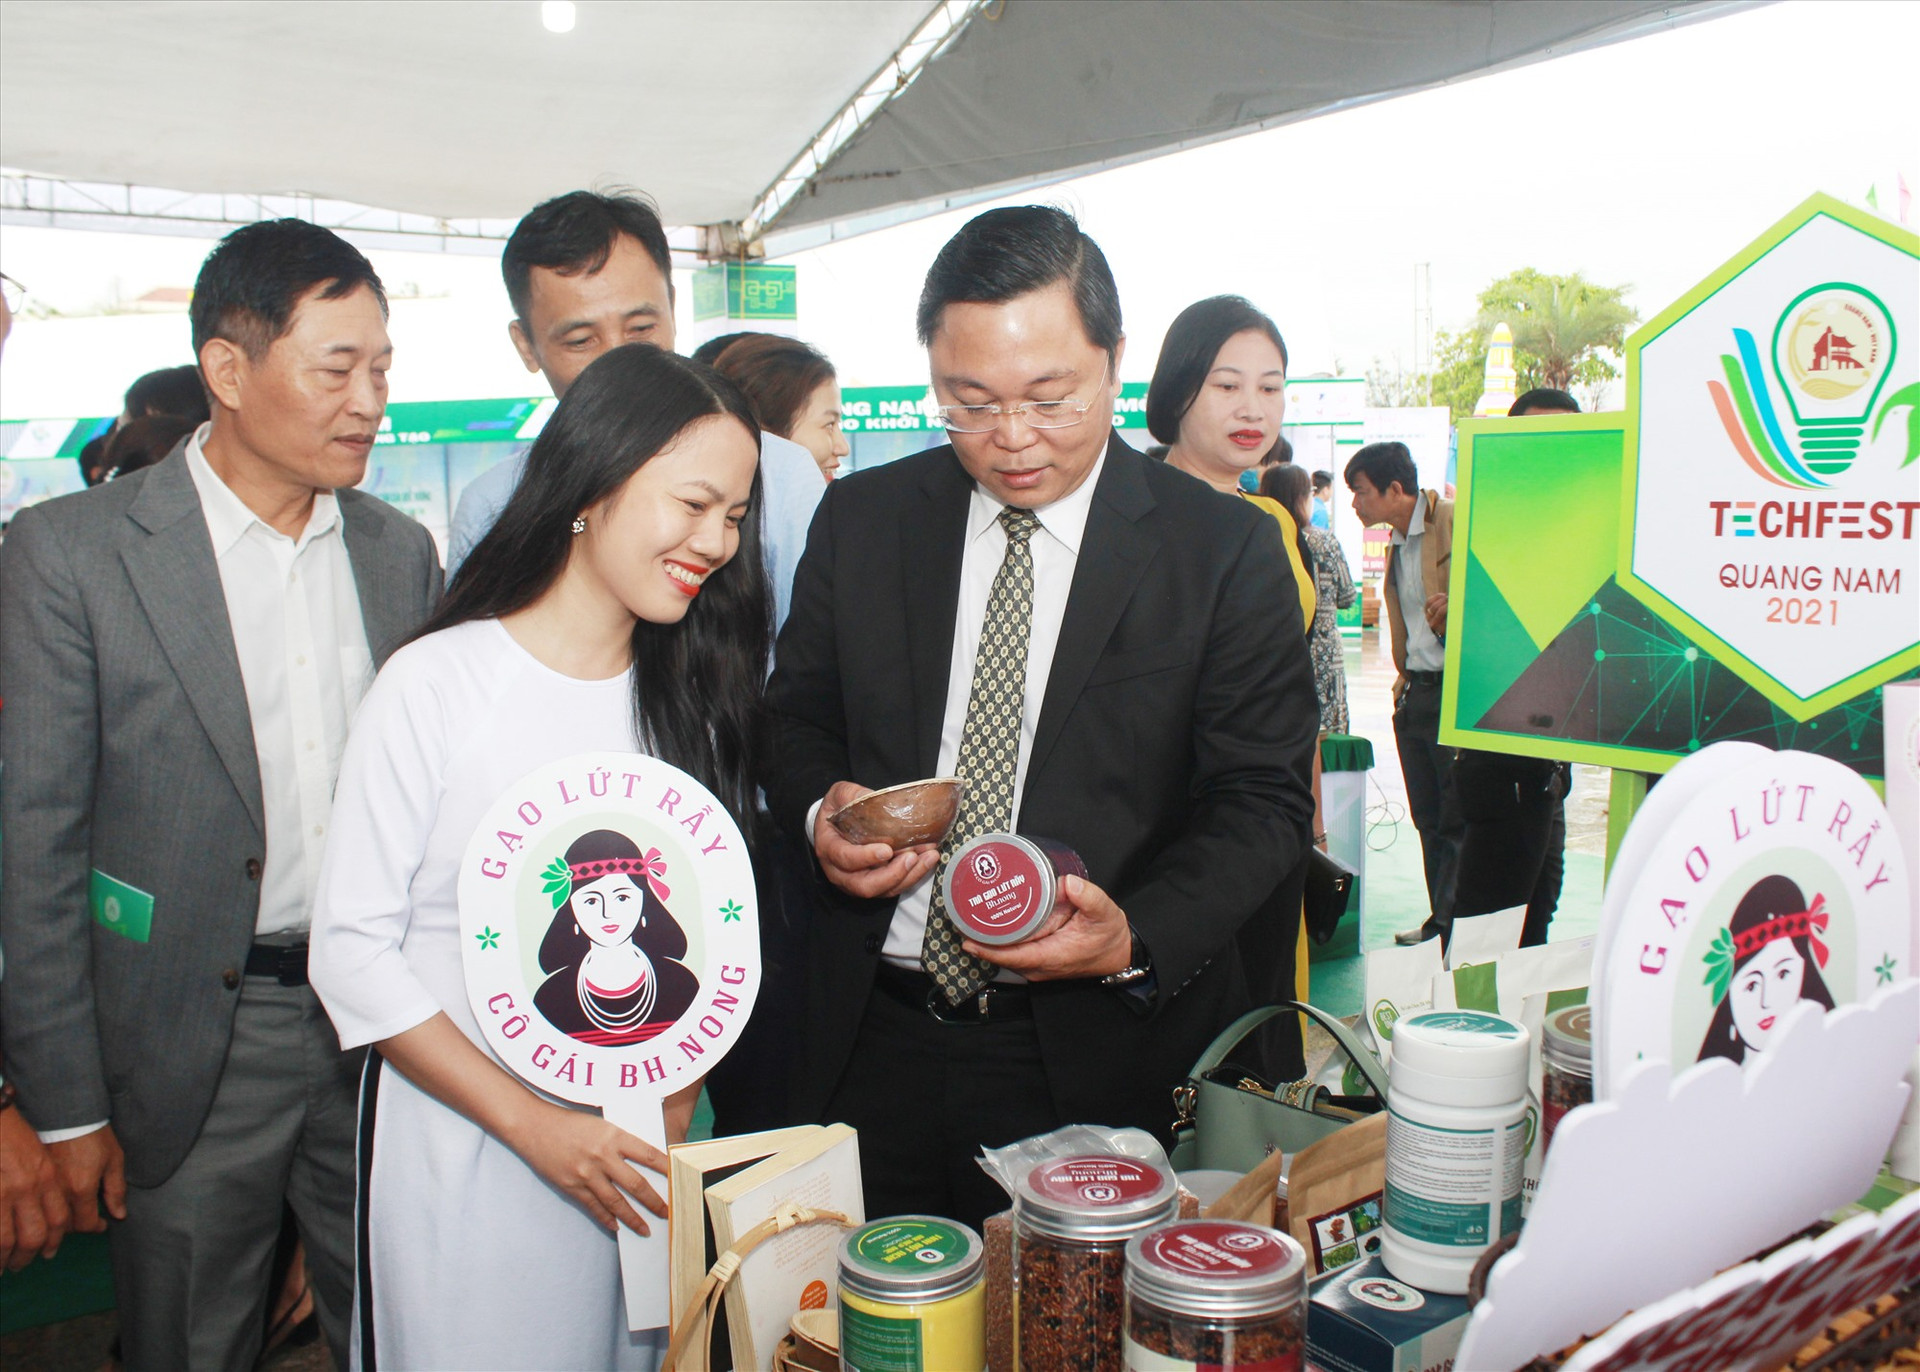 Chủ tịch UBND tỉnh Lê Trí Thanh thăm các gian hàng trưng bày sản phẩm khởi nghiệp - OCOP tại Techfest Quảng Nam tổ chức vào tháng 3.2021. Ảnh: T.C